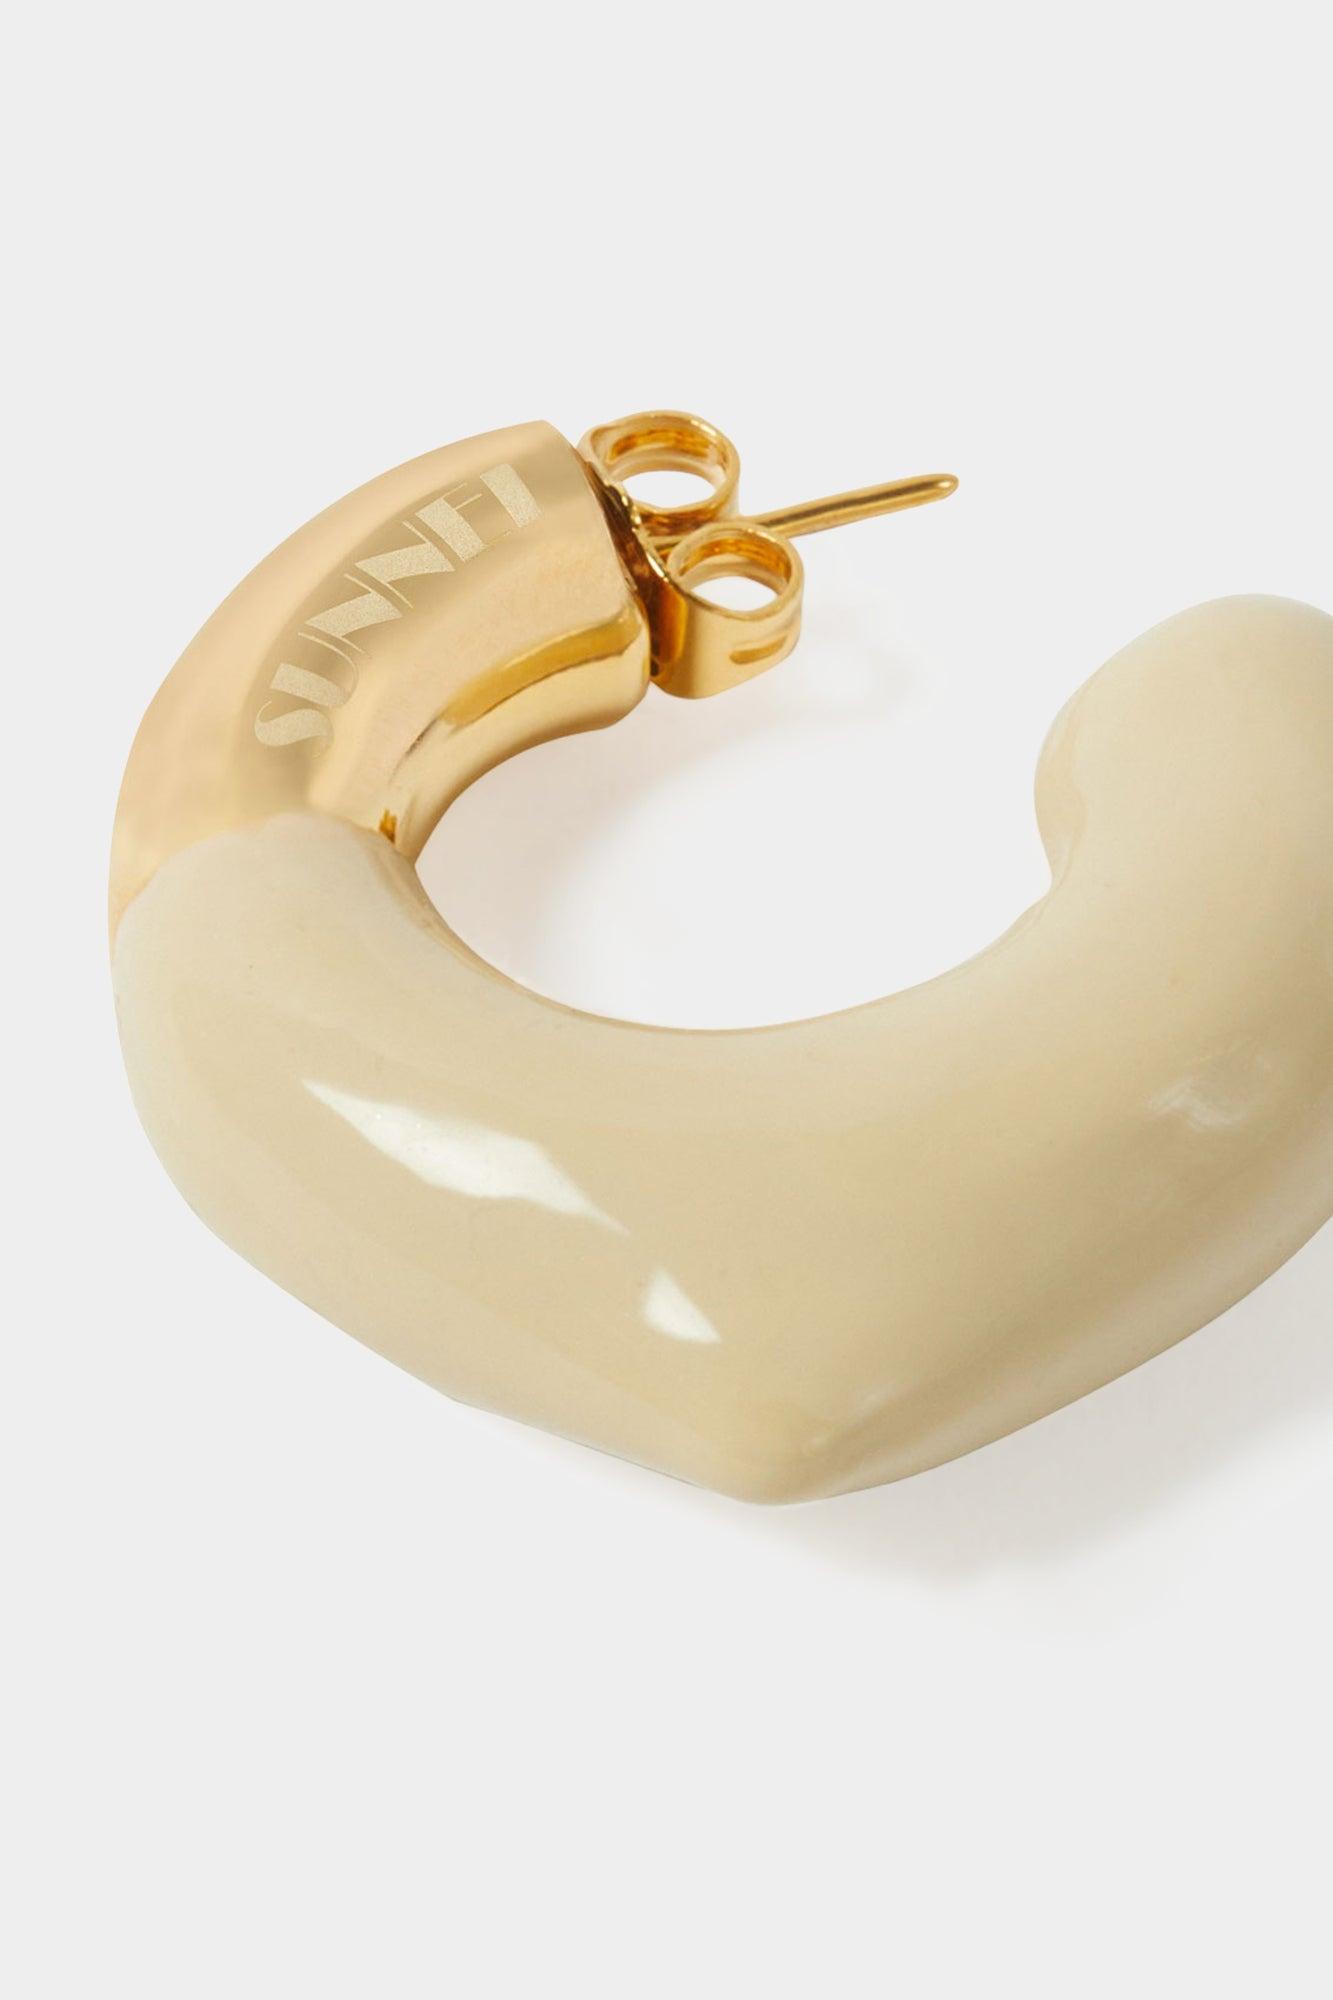 Sunnei Small Rubberized Earrings Gold / Beige in Metallic | Lyst